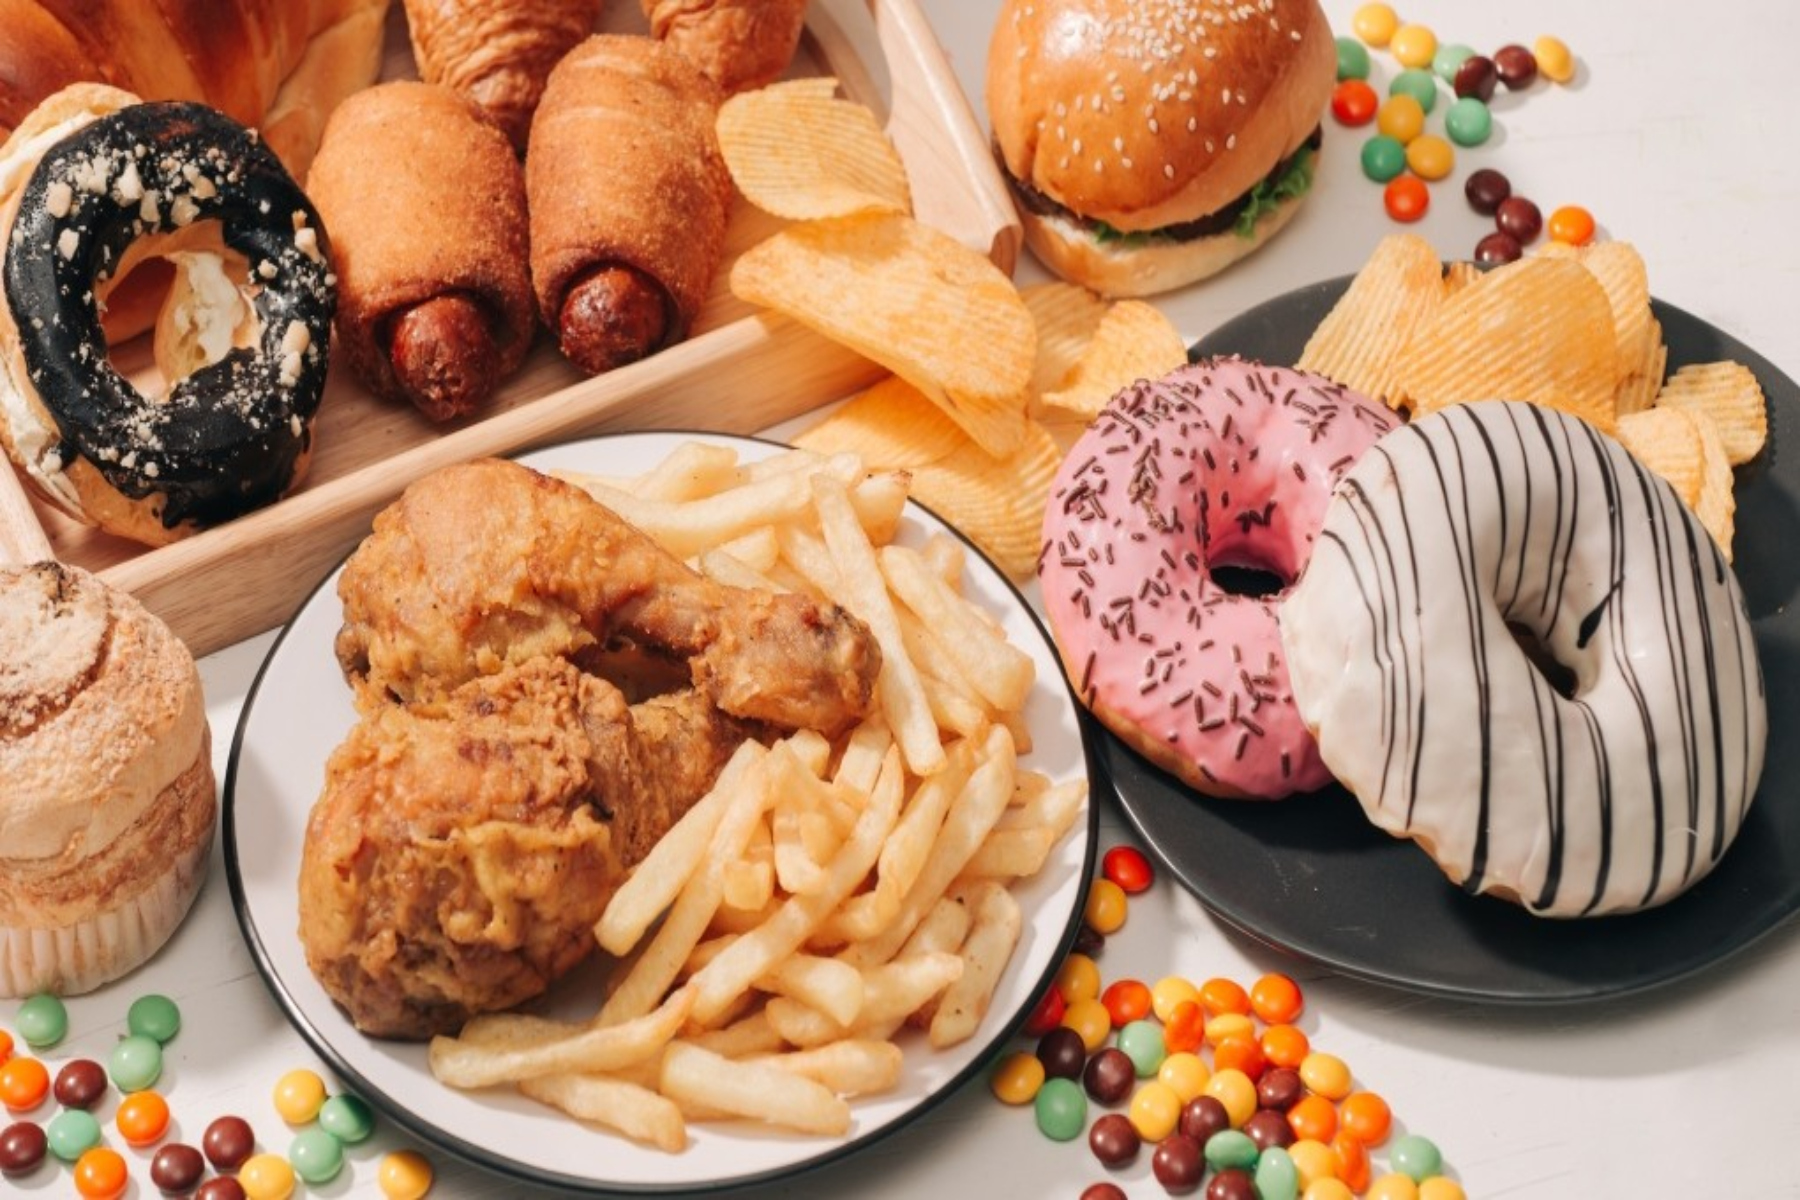 Διατροφή: Έχουν αυξηθεί οι ποσότητες των επεξεργασμένων τροφίμων στην Αμερική